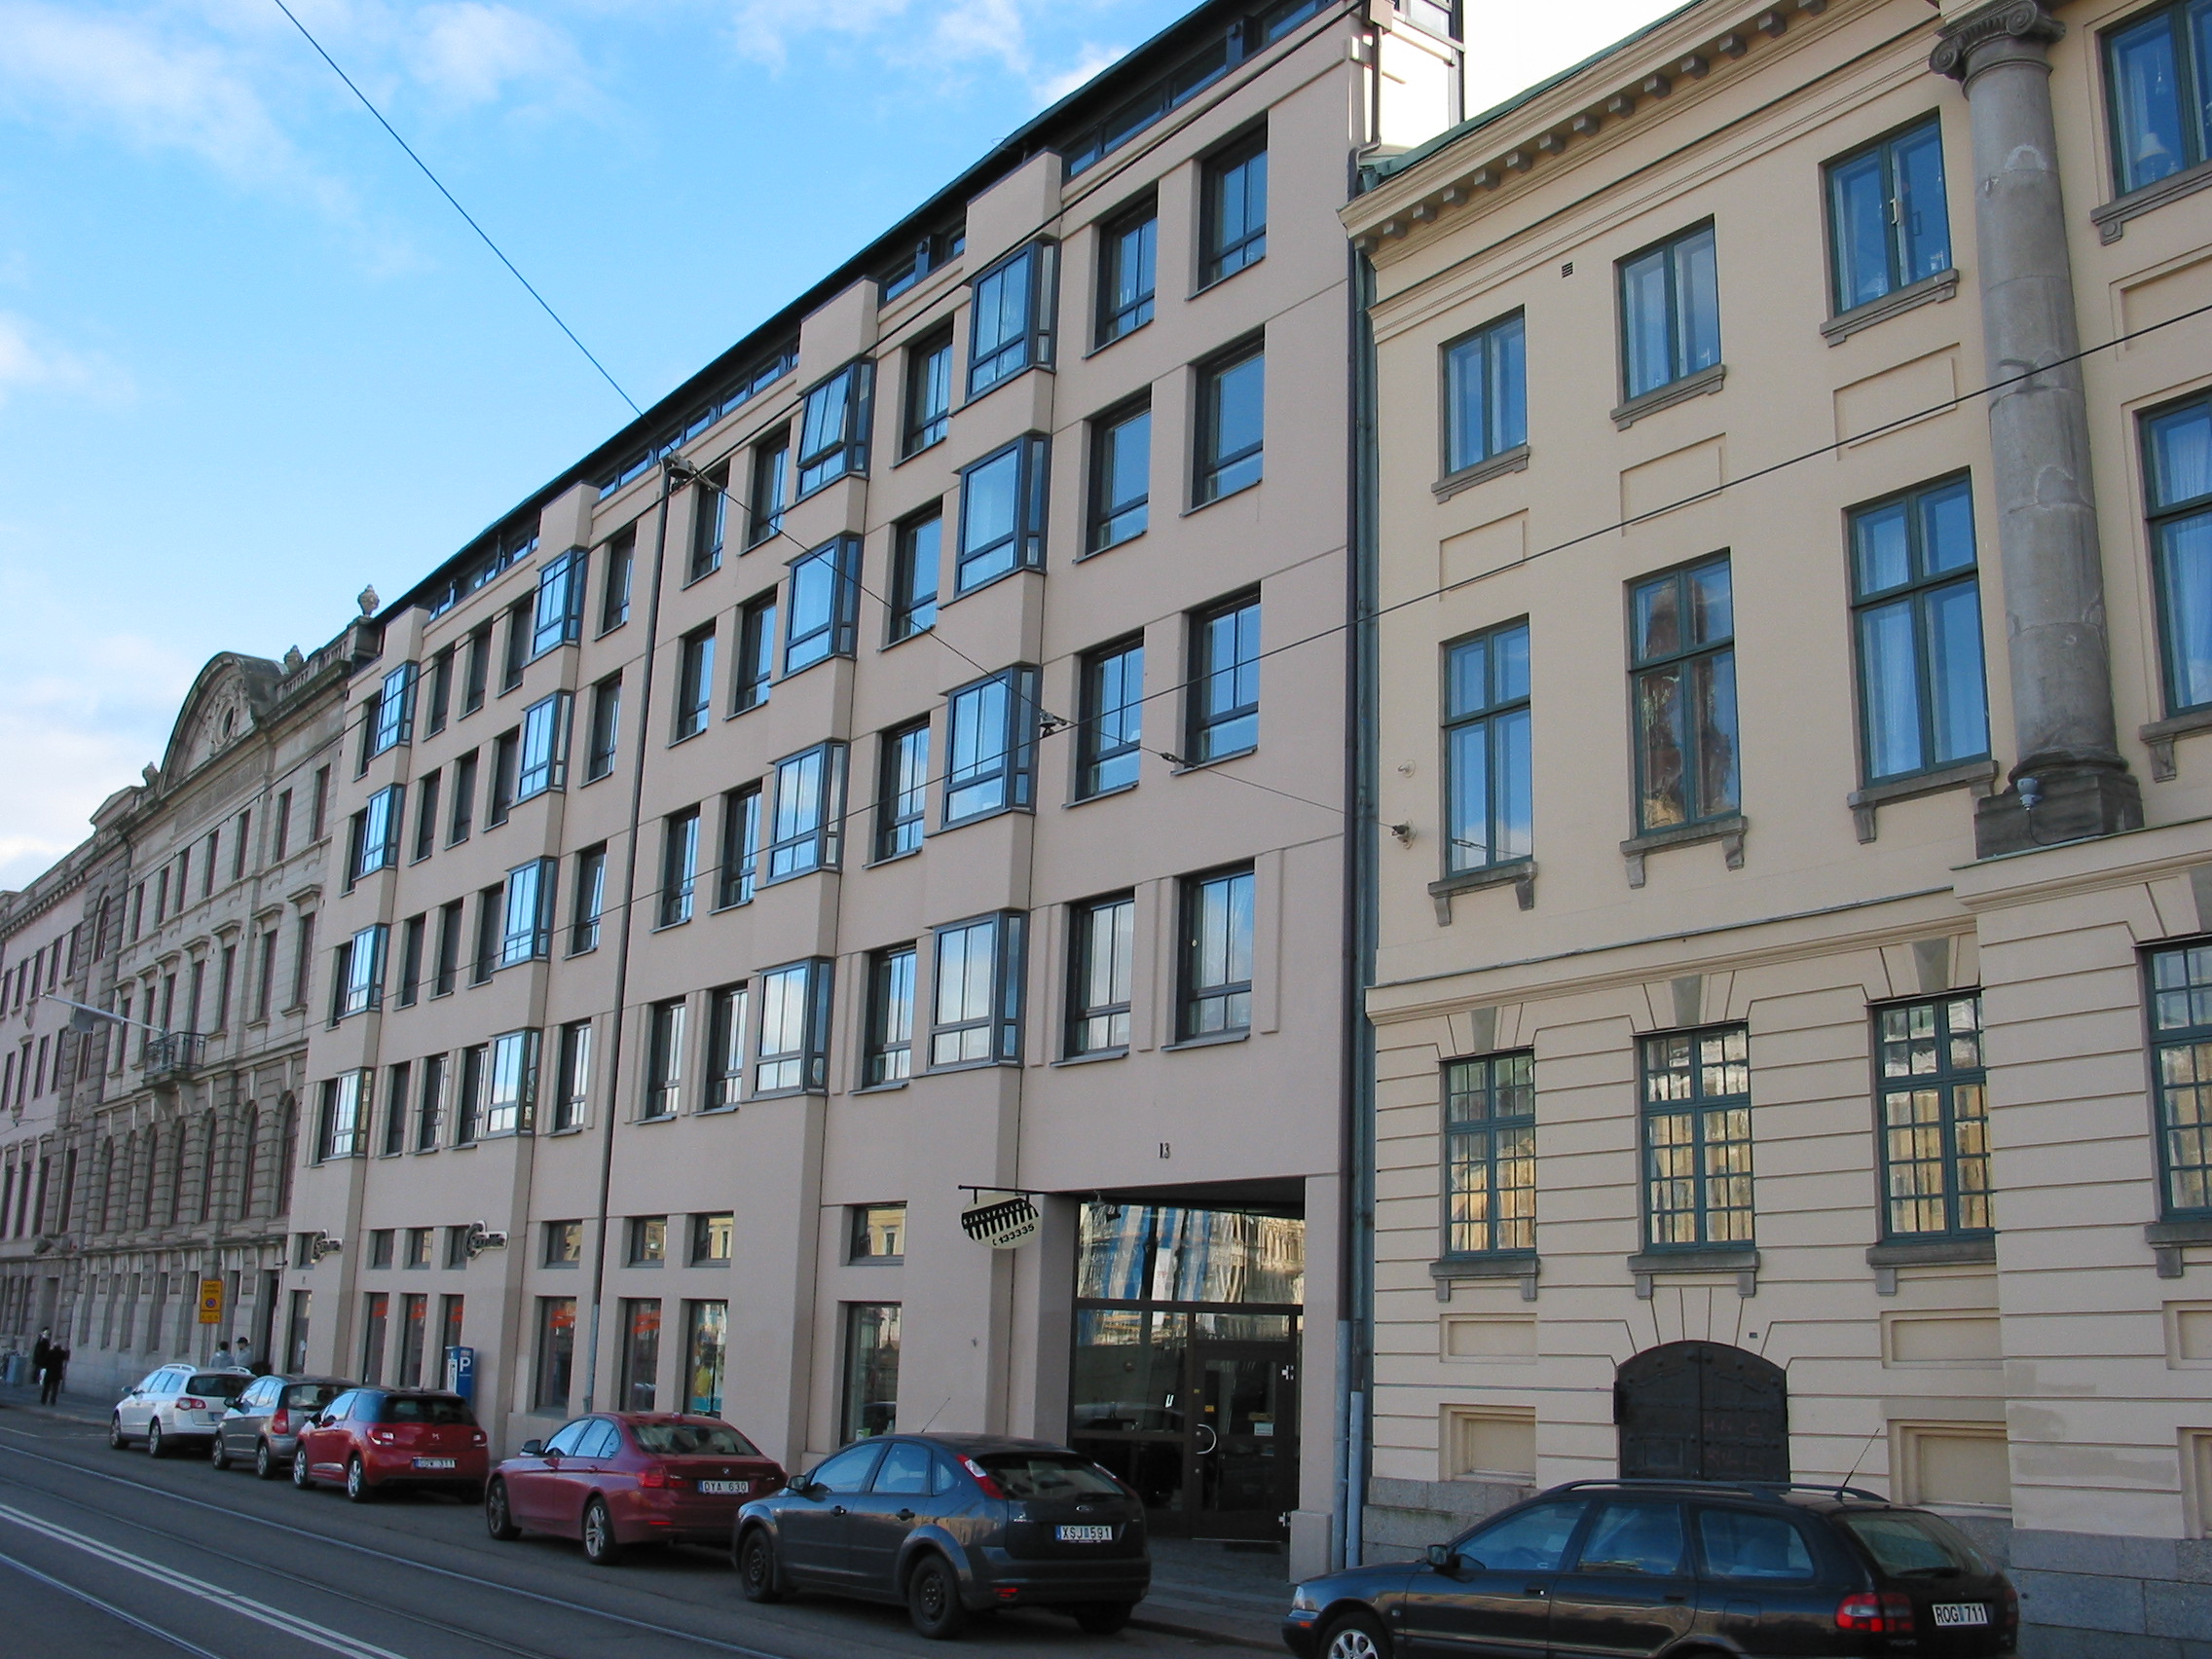 Kvarteret där Apoteket Enhörningen låg fram till 1960-talet. Nuvarande byggnad uppförd 1980 med Rune Falk som arkitekt. Chalmerska huset (av arkitekten C W Carlberg) på höger sida.